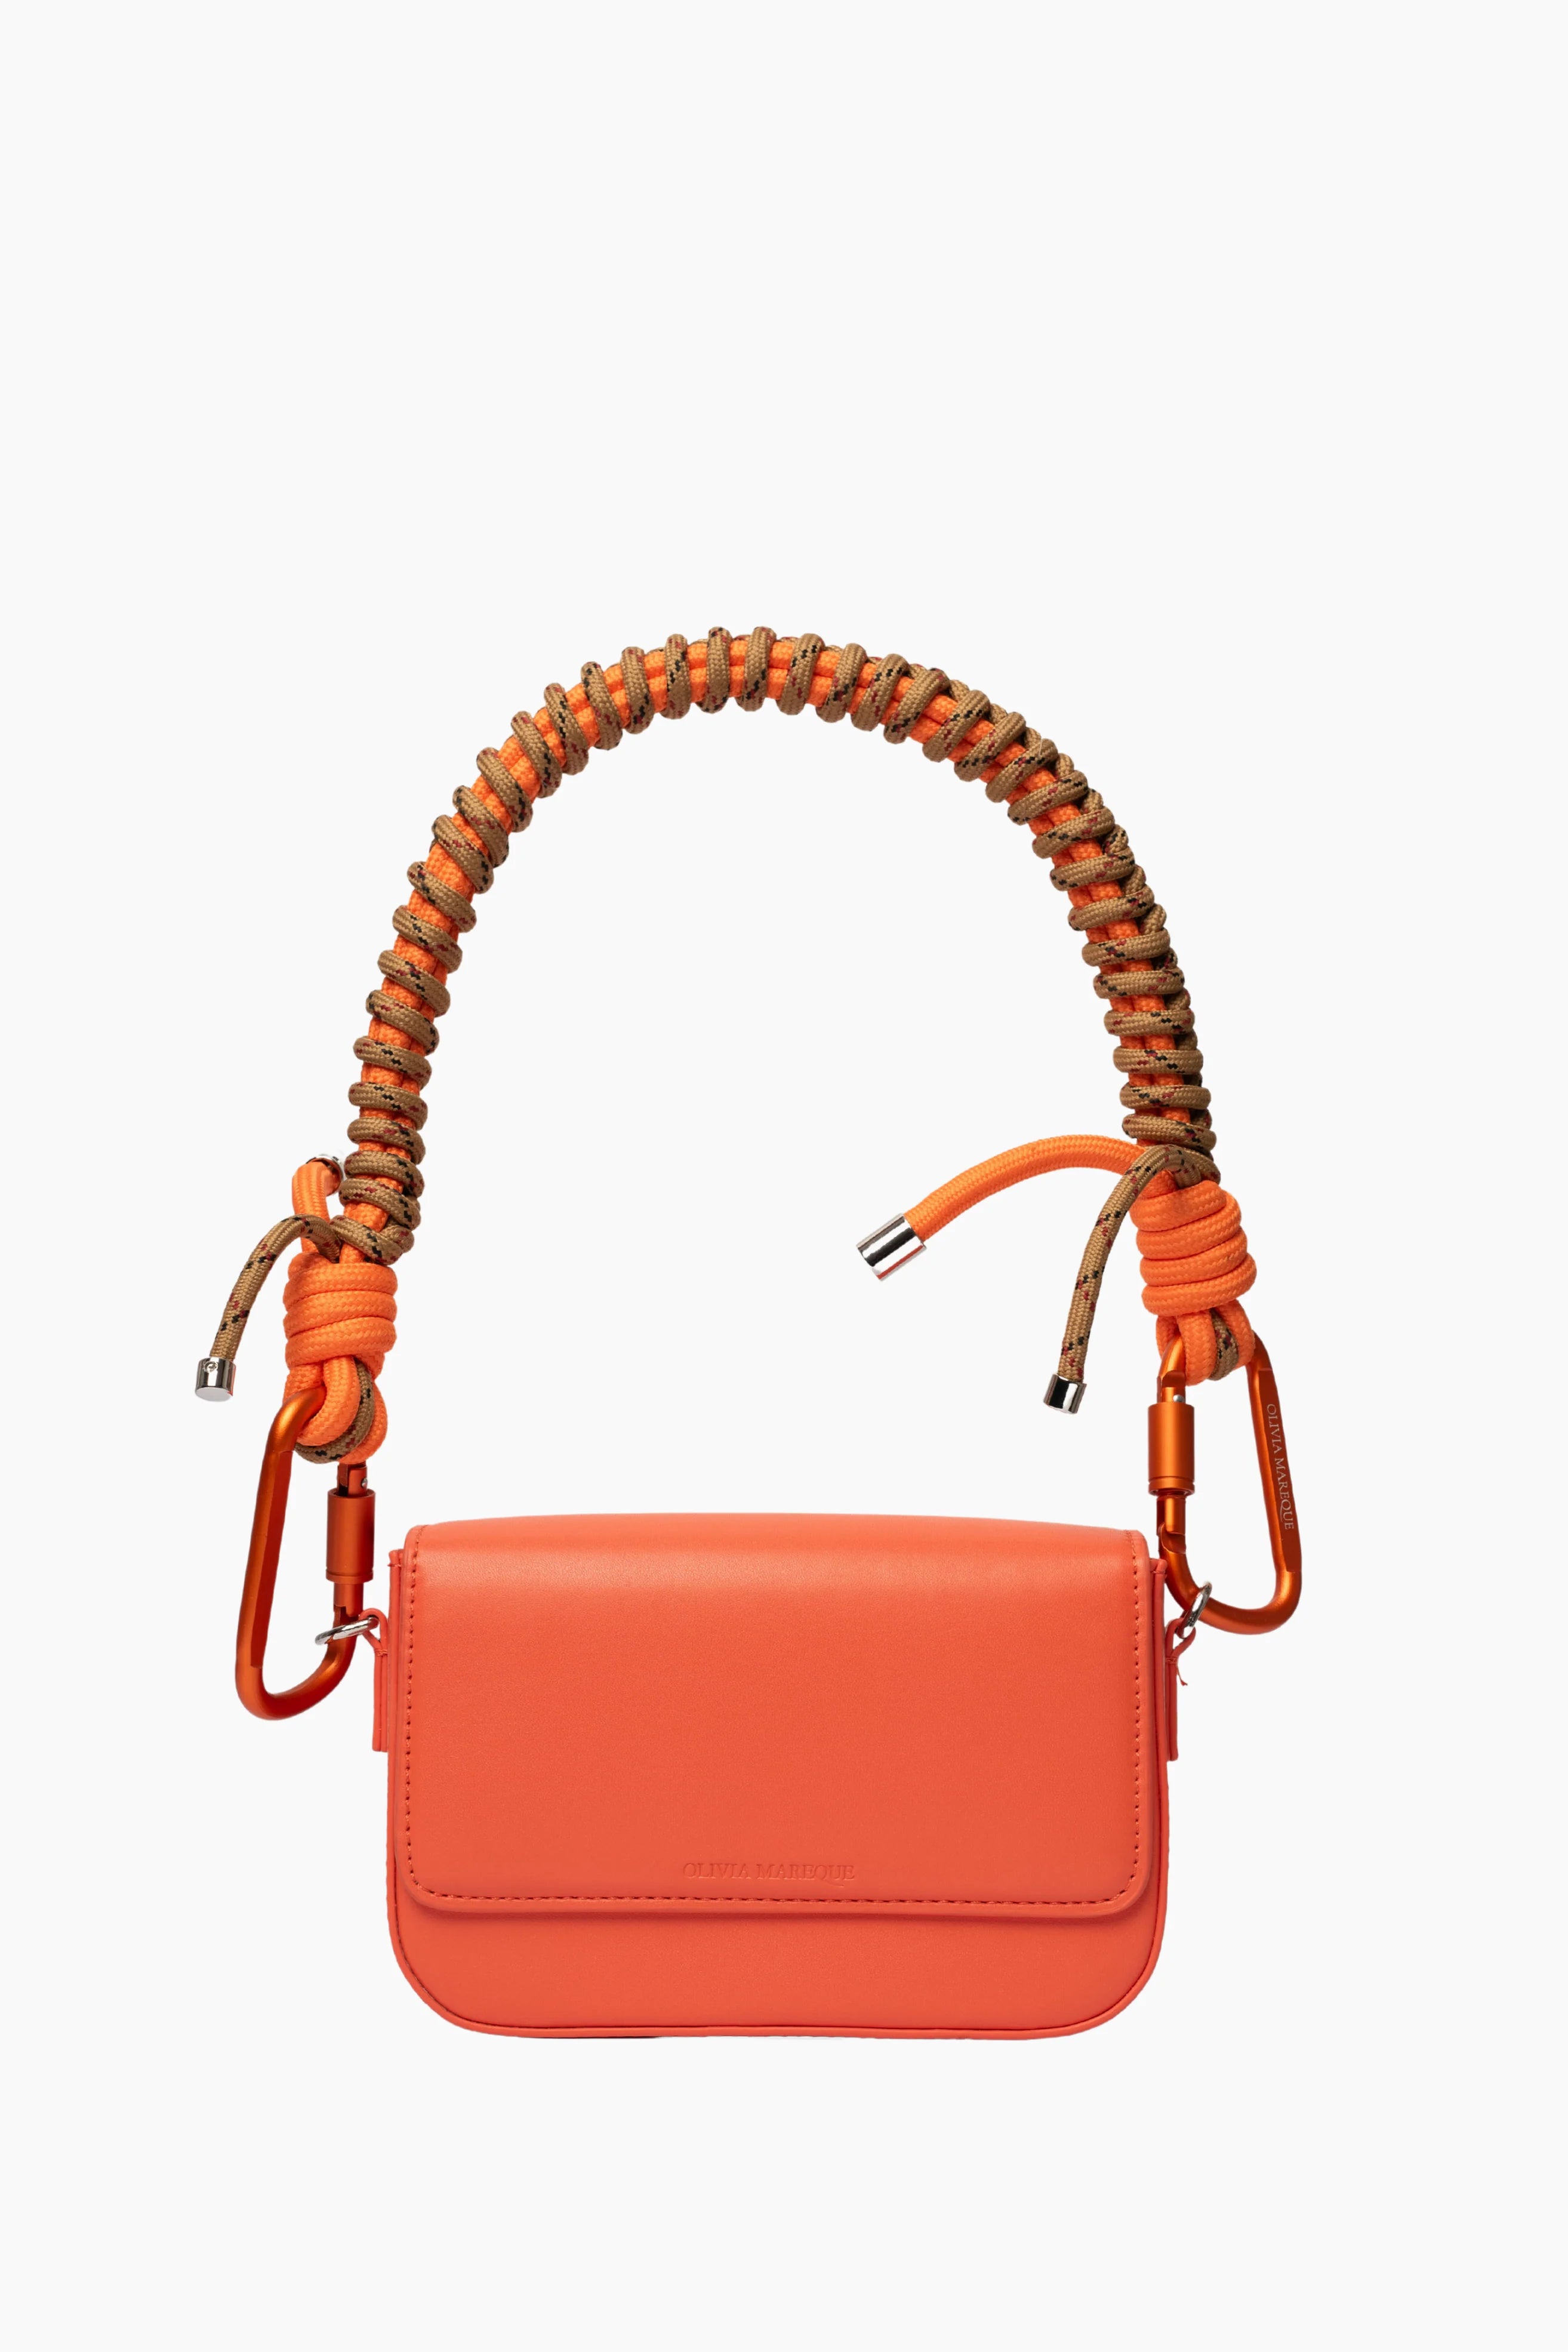 Pantone Orange Bag